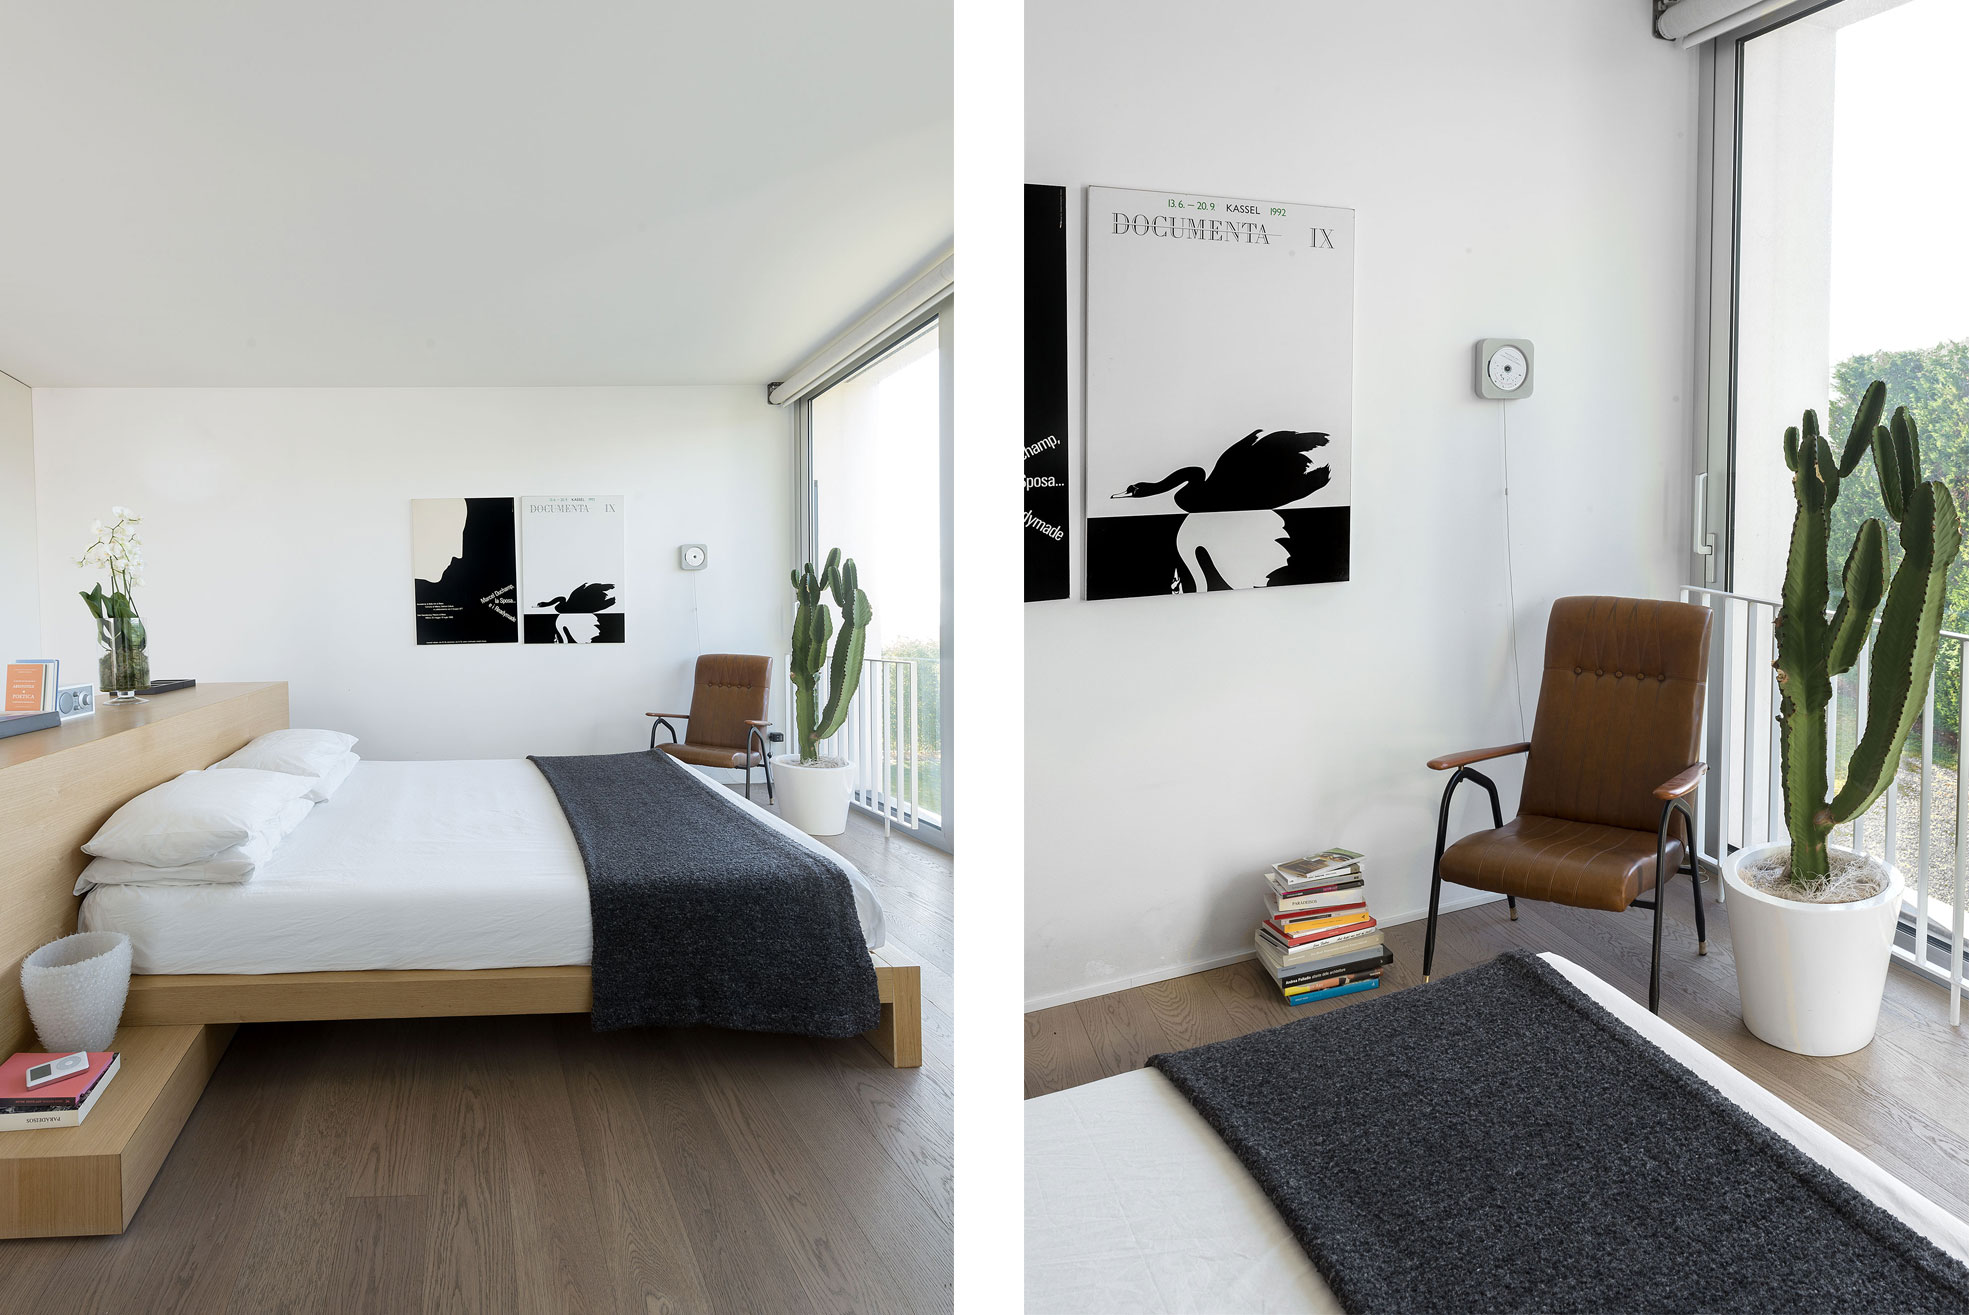 Bedroom in the concrete and minimalist villa of Rosalba Piccinni Photographer Maria Teresa Furnari